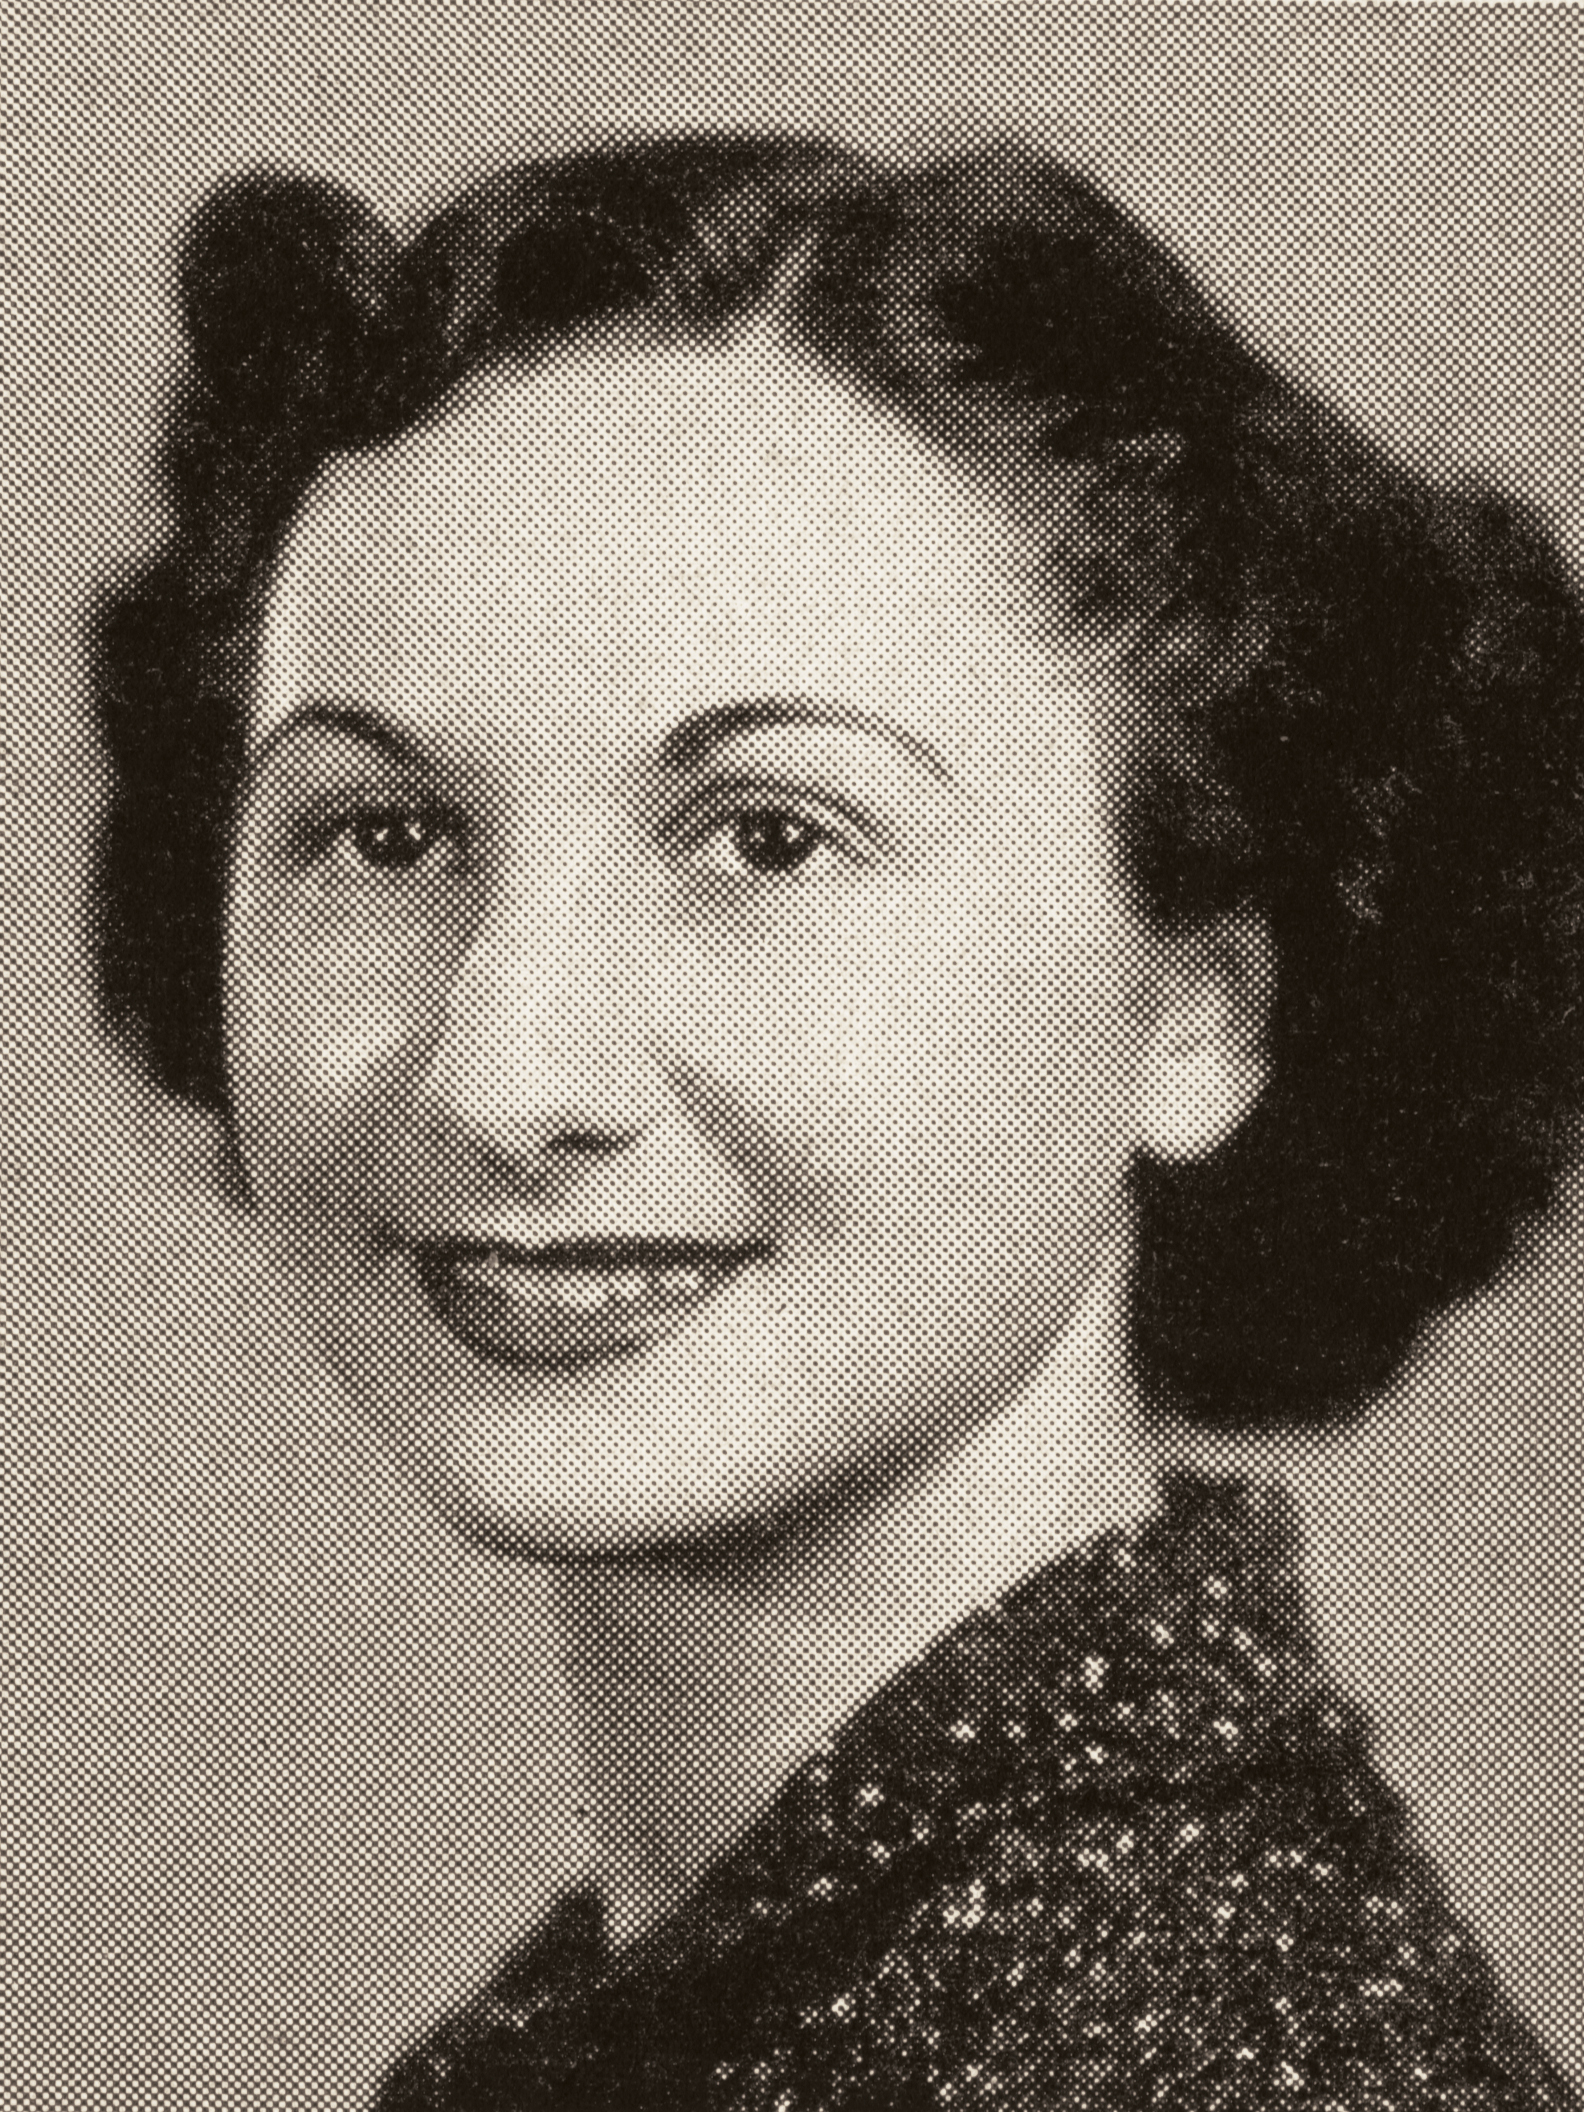 Bernice Bedrick, B.S. ’38, bacteriology, in her 1938 senior yearbook photo.